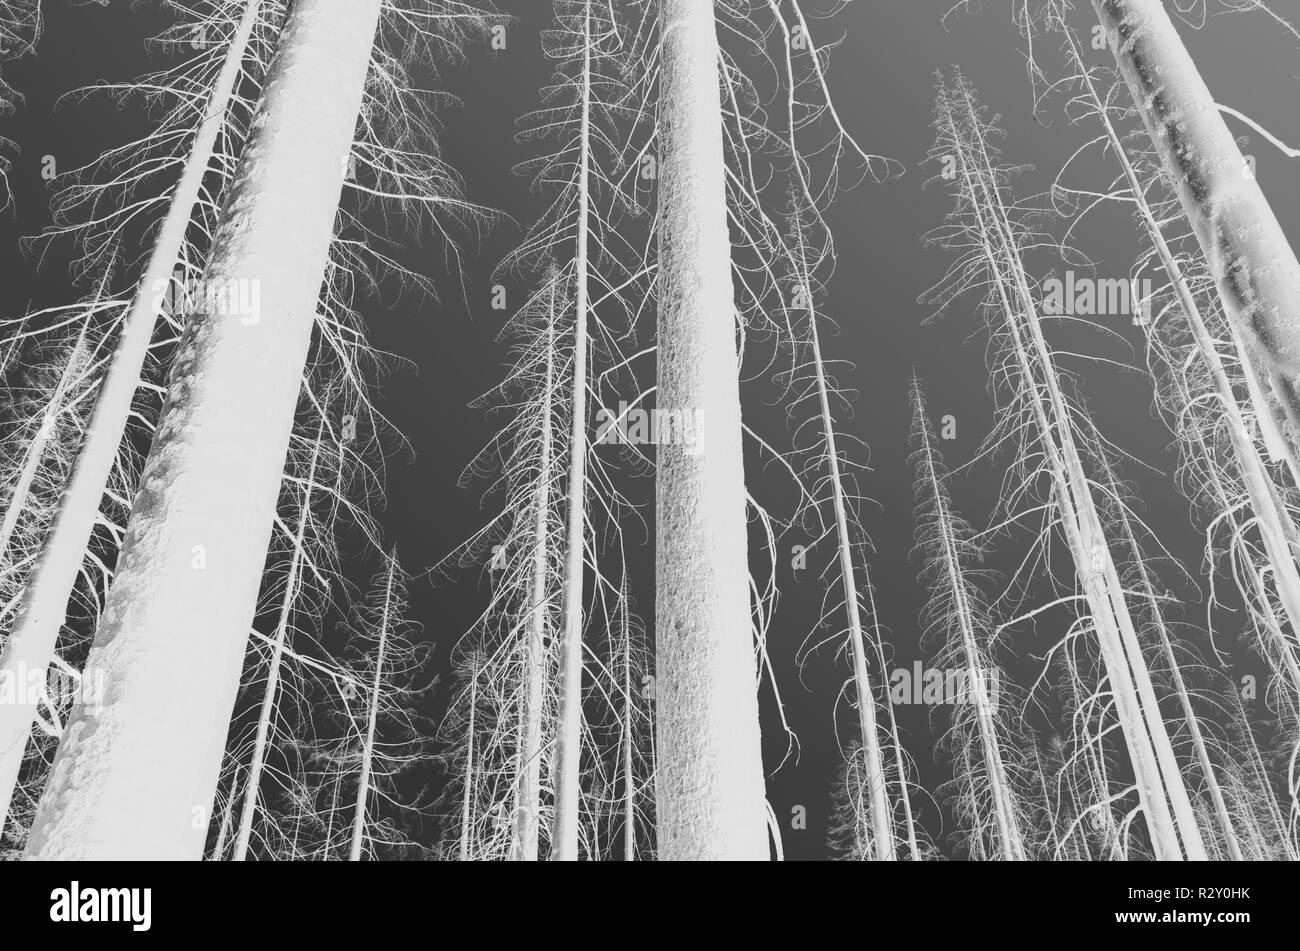 Le noir et blanc image inversée de la crête des Scandinaves feu de forêt arbres endommagés, low angle view, près de Mount Rainier National Park sur la Pacific Crest Trai Banque D'Images